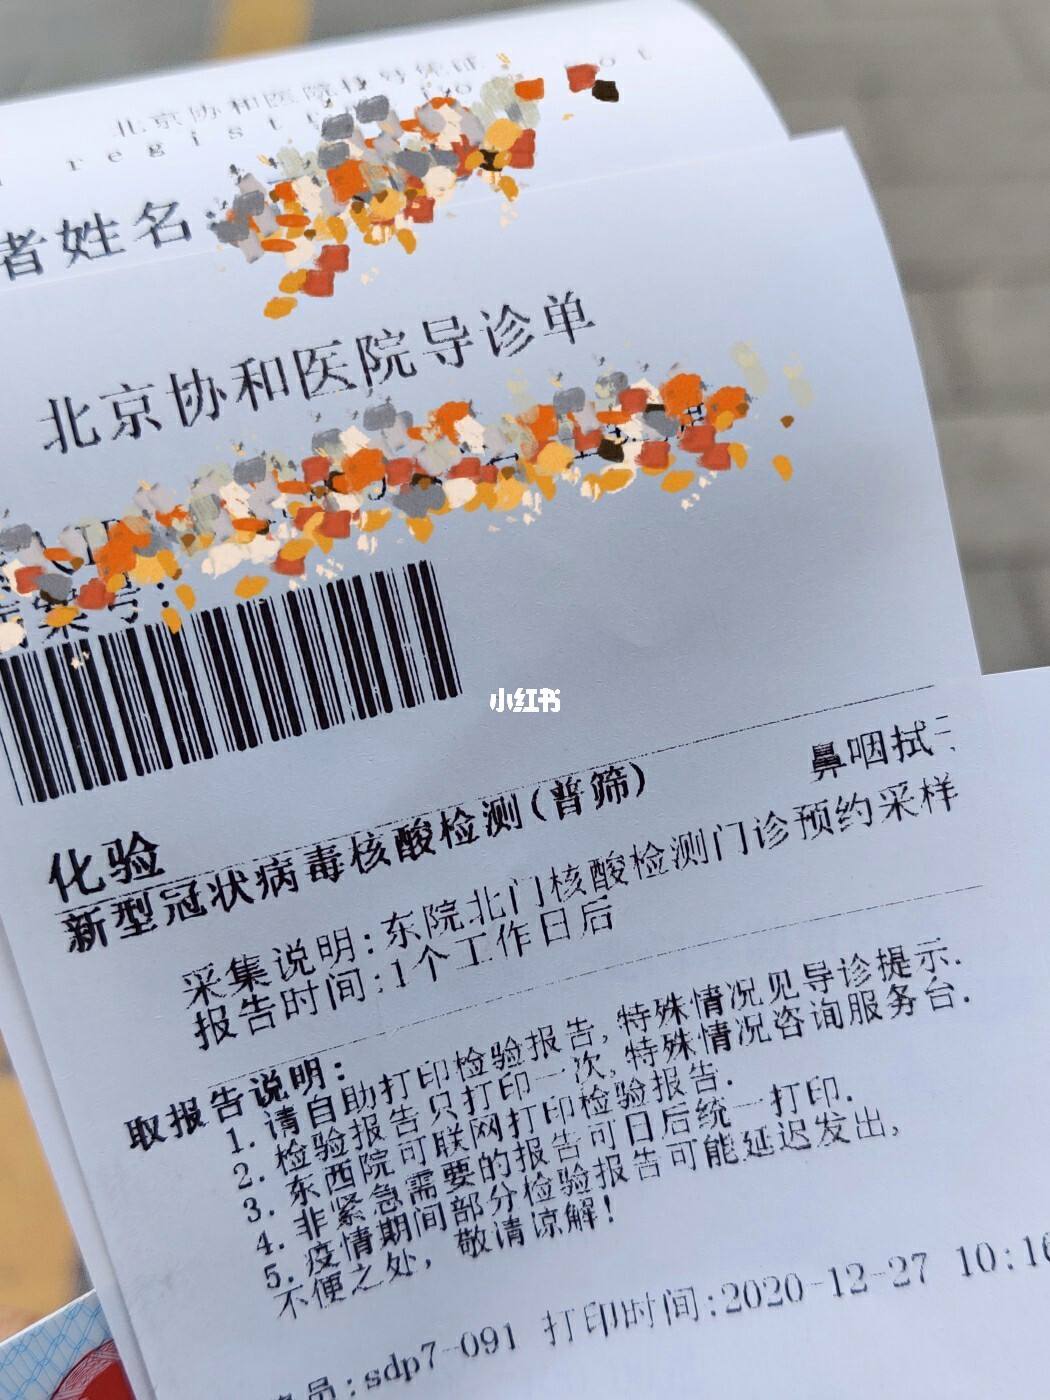 关于北京中医医院贩子联系方式《提前预约很靠谱》【出号快]的信息